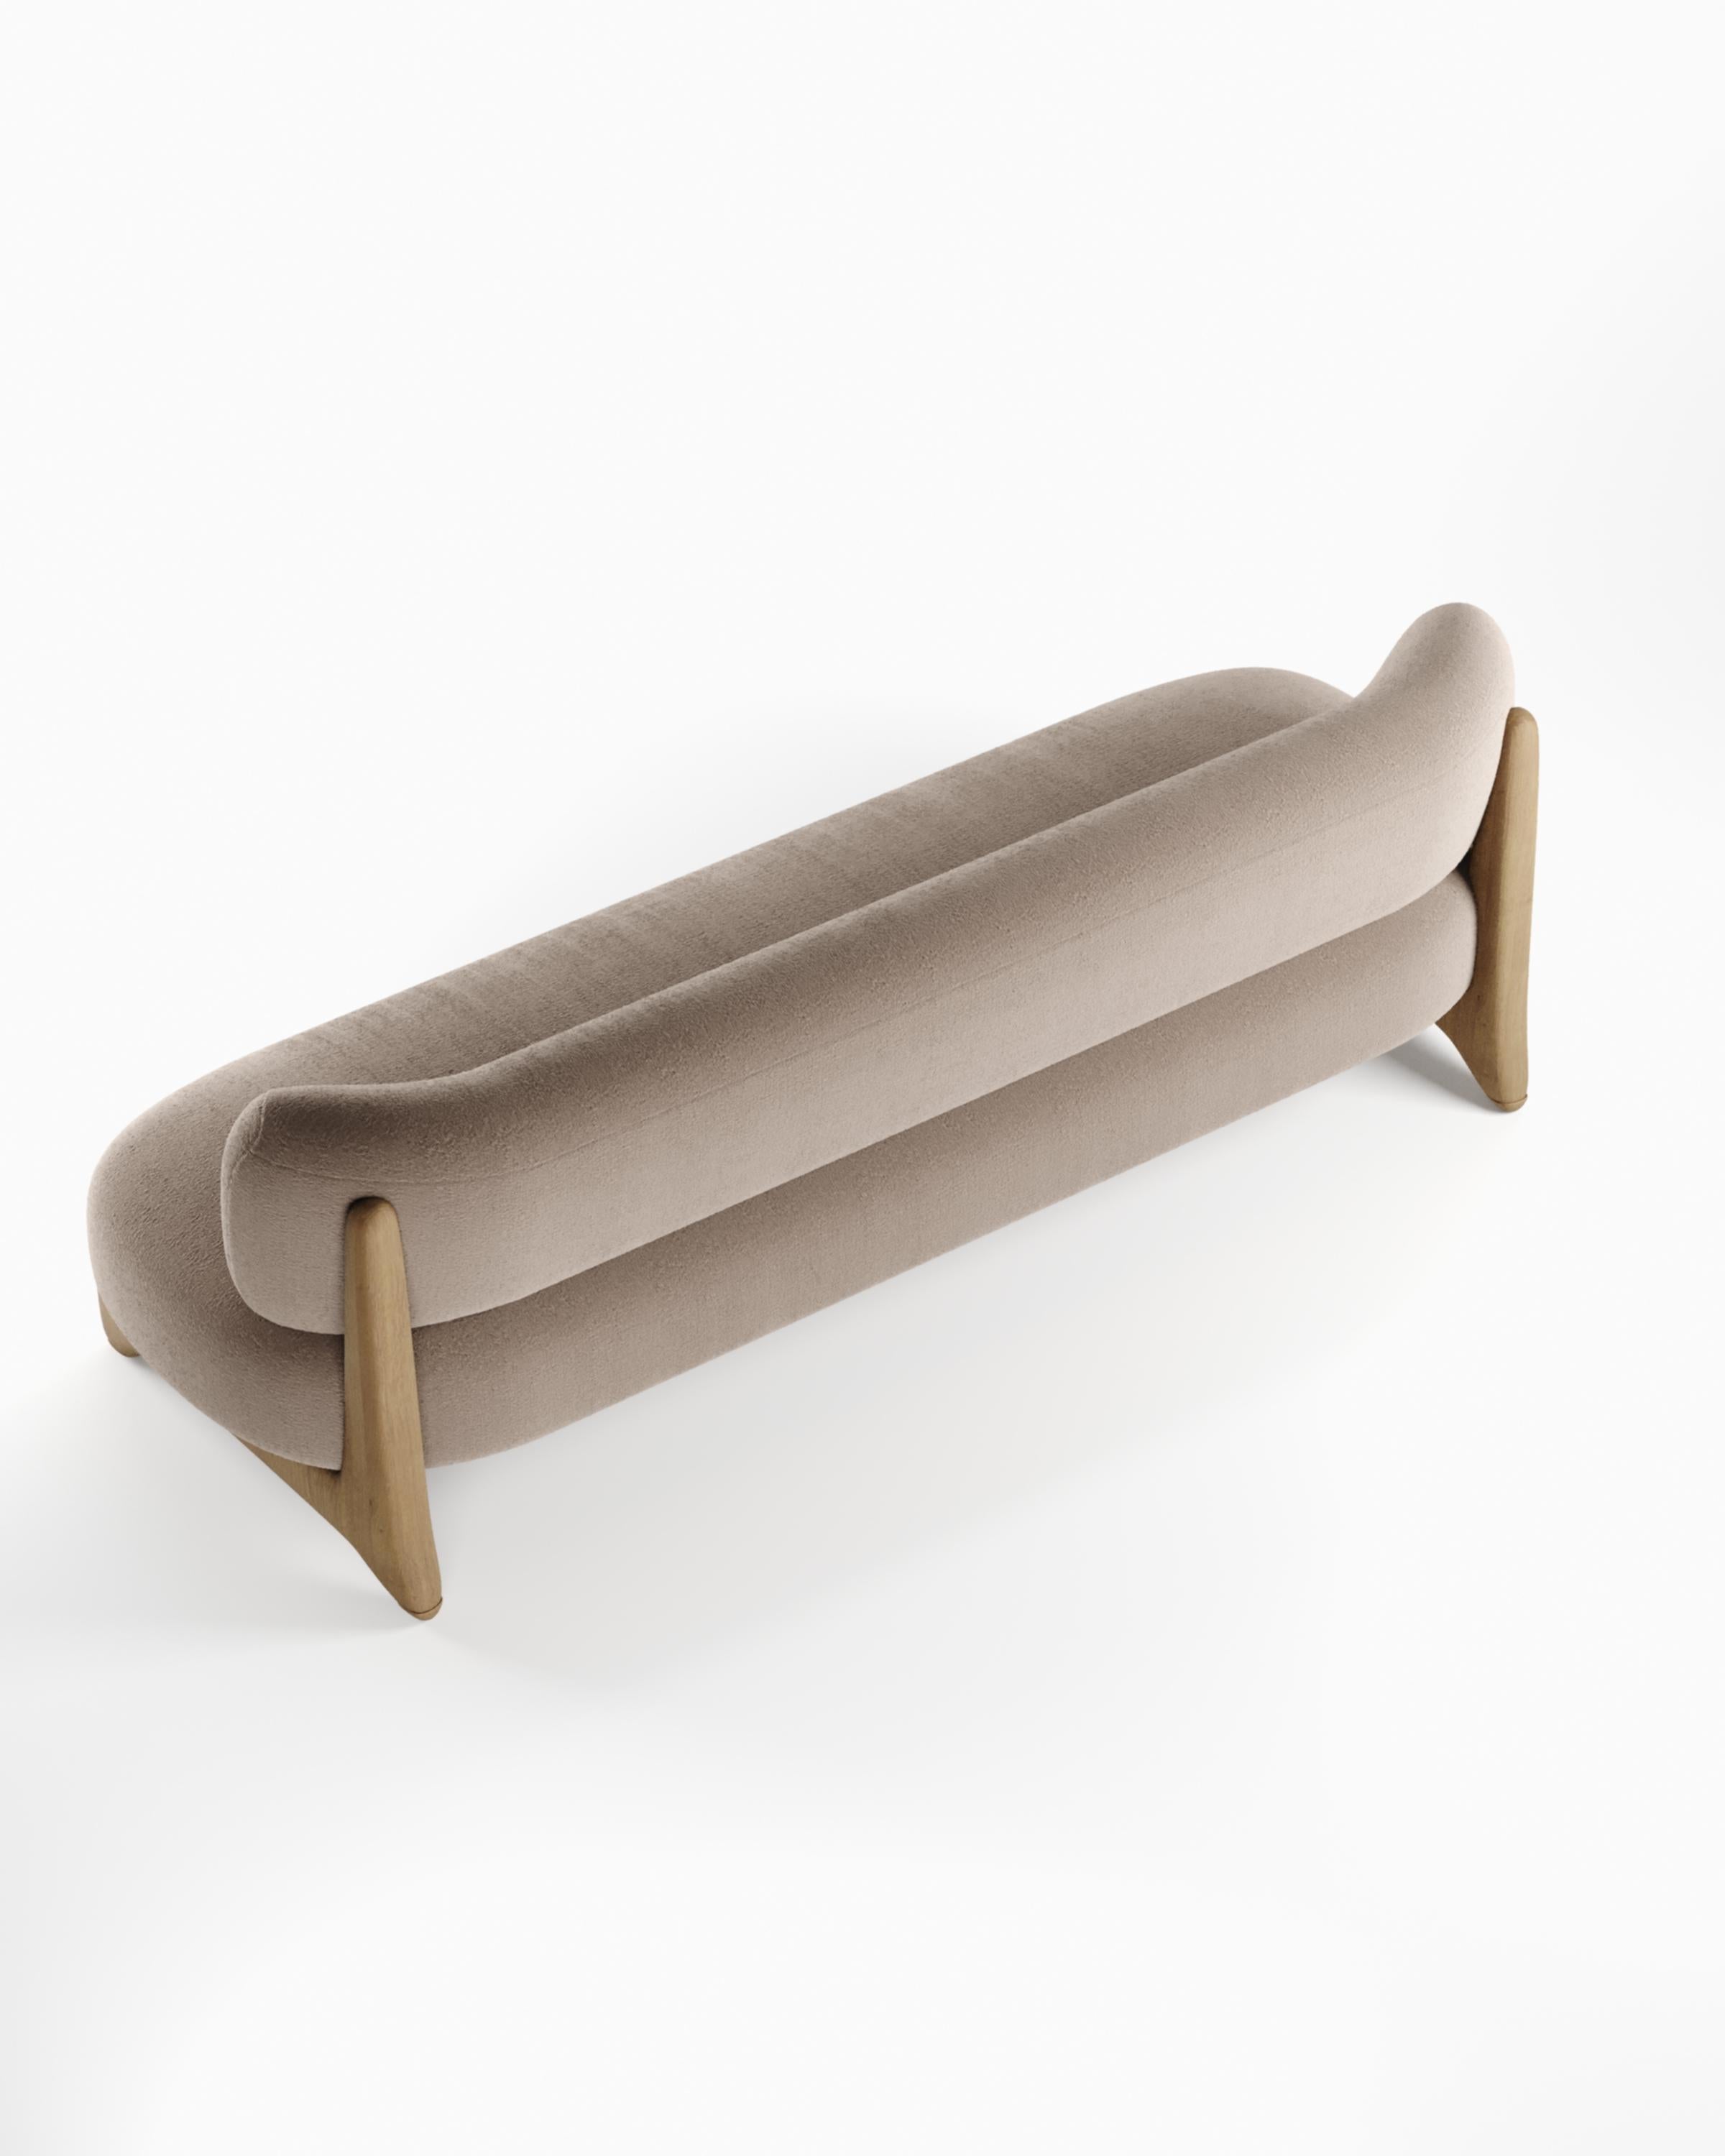 Moderner Tobo-Sessel aus Stoff und Eichenholz von Alter Ego für Collector Studio.

Untermauert von einer minimalistischen und raffinierten Ästhetik mit klaren Linien.

Abmessungen
B 70 cm 27,6